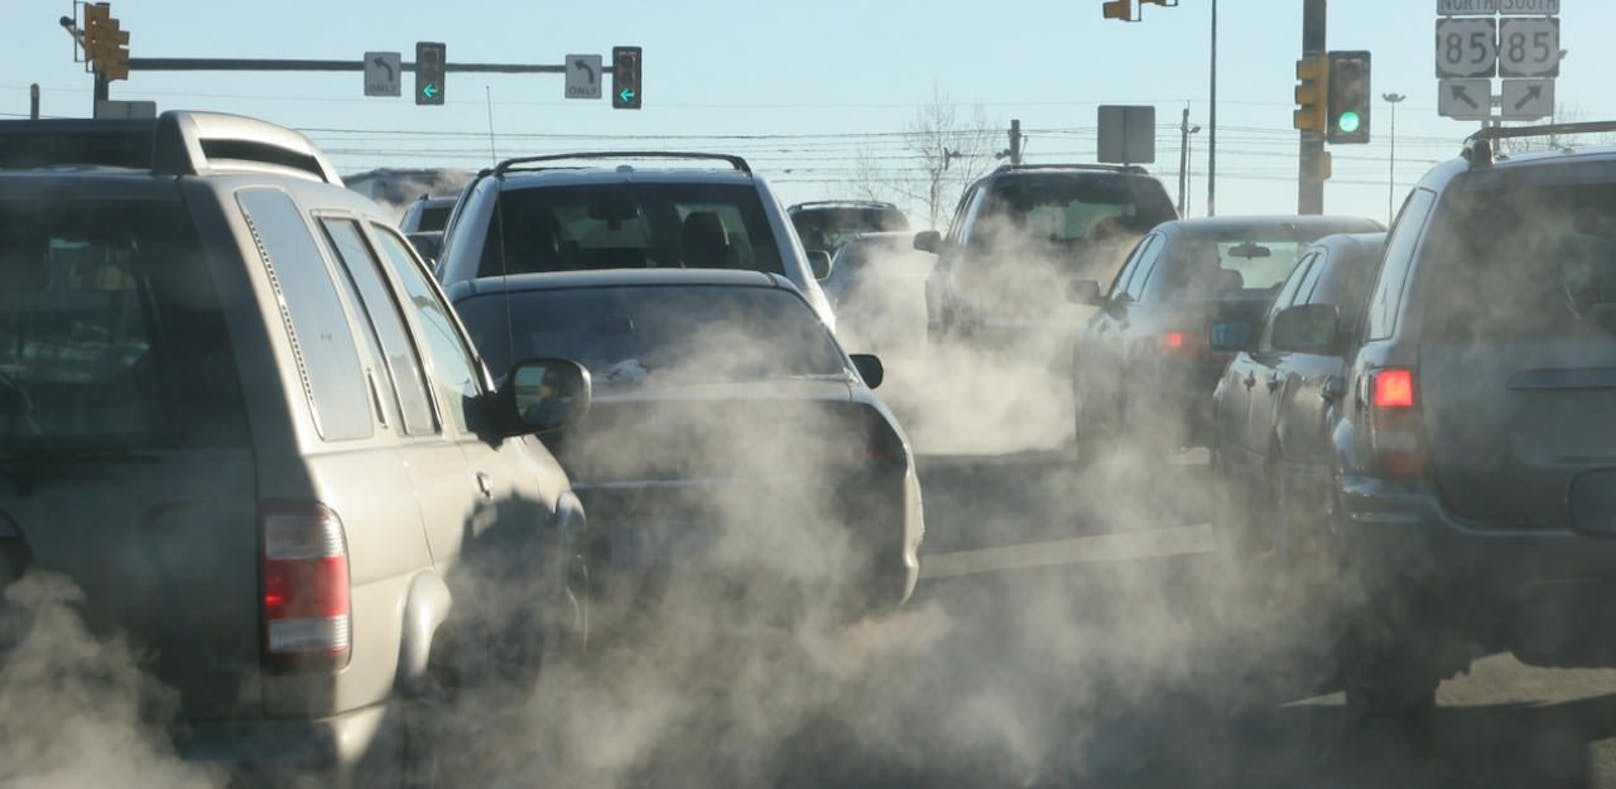 Abgase tragen einen großen Teil zur Umweltverschmutzung bei. (Symbolbild)